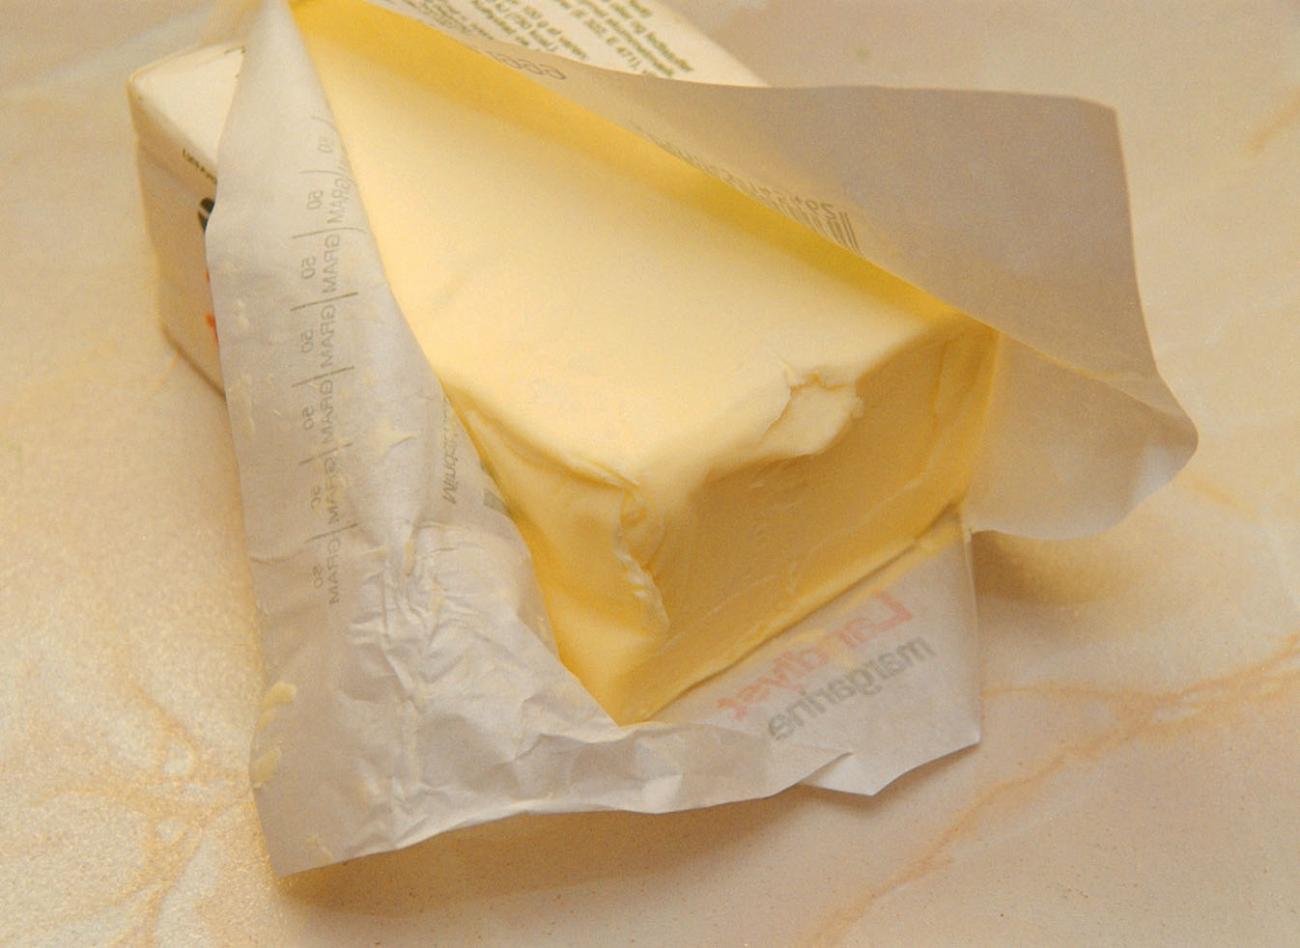 michael davis
Variationer. I Europa varierar kilopriset på smör kraftigt, från 43,60 mark i Rom till 20,00 mark i Moskva. *** Local Caption *** @Foto:michael davis
@Bildtext:<B>Revansch för smöret?<$> Det är mycket hälsosammare att äta smör, helst ekologiskt, i stället för margarin med härdat fett, anser näringsterapeuten.
